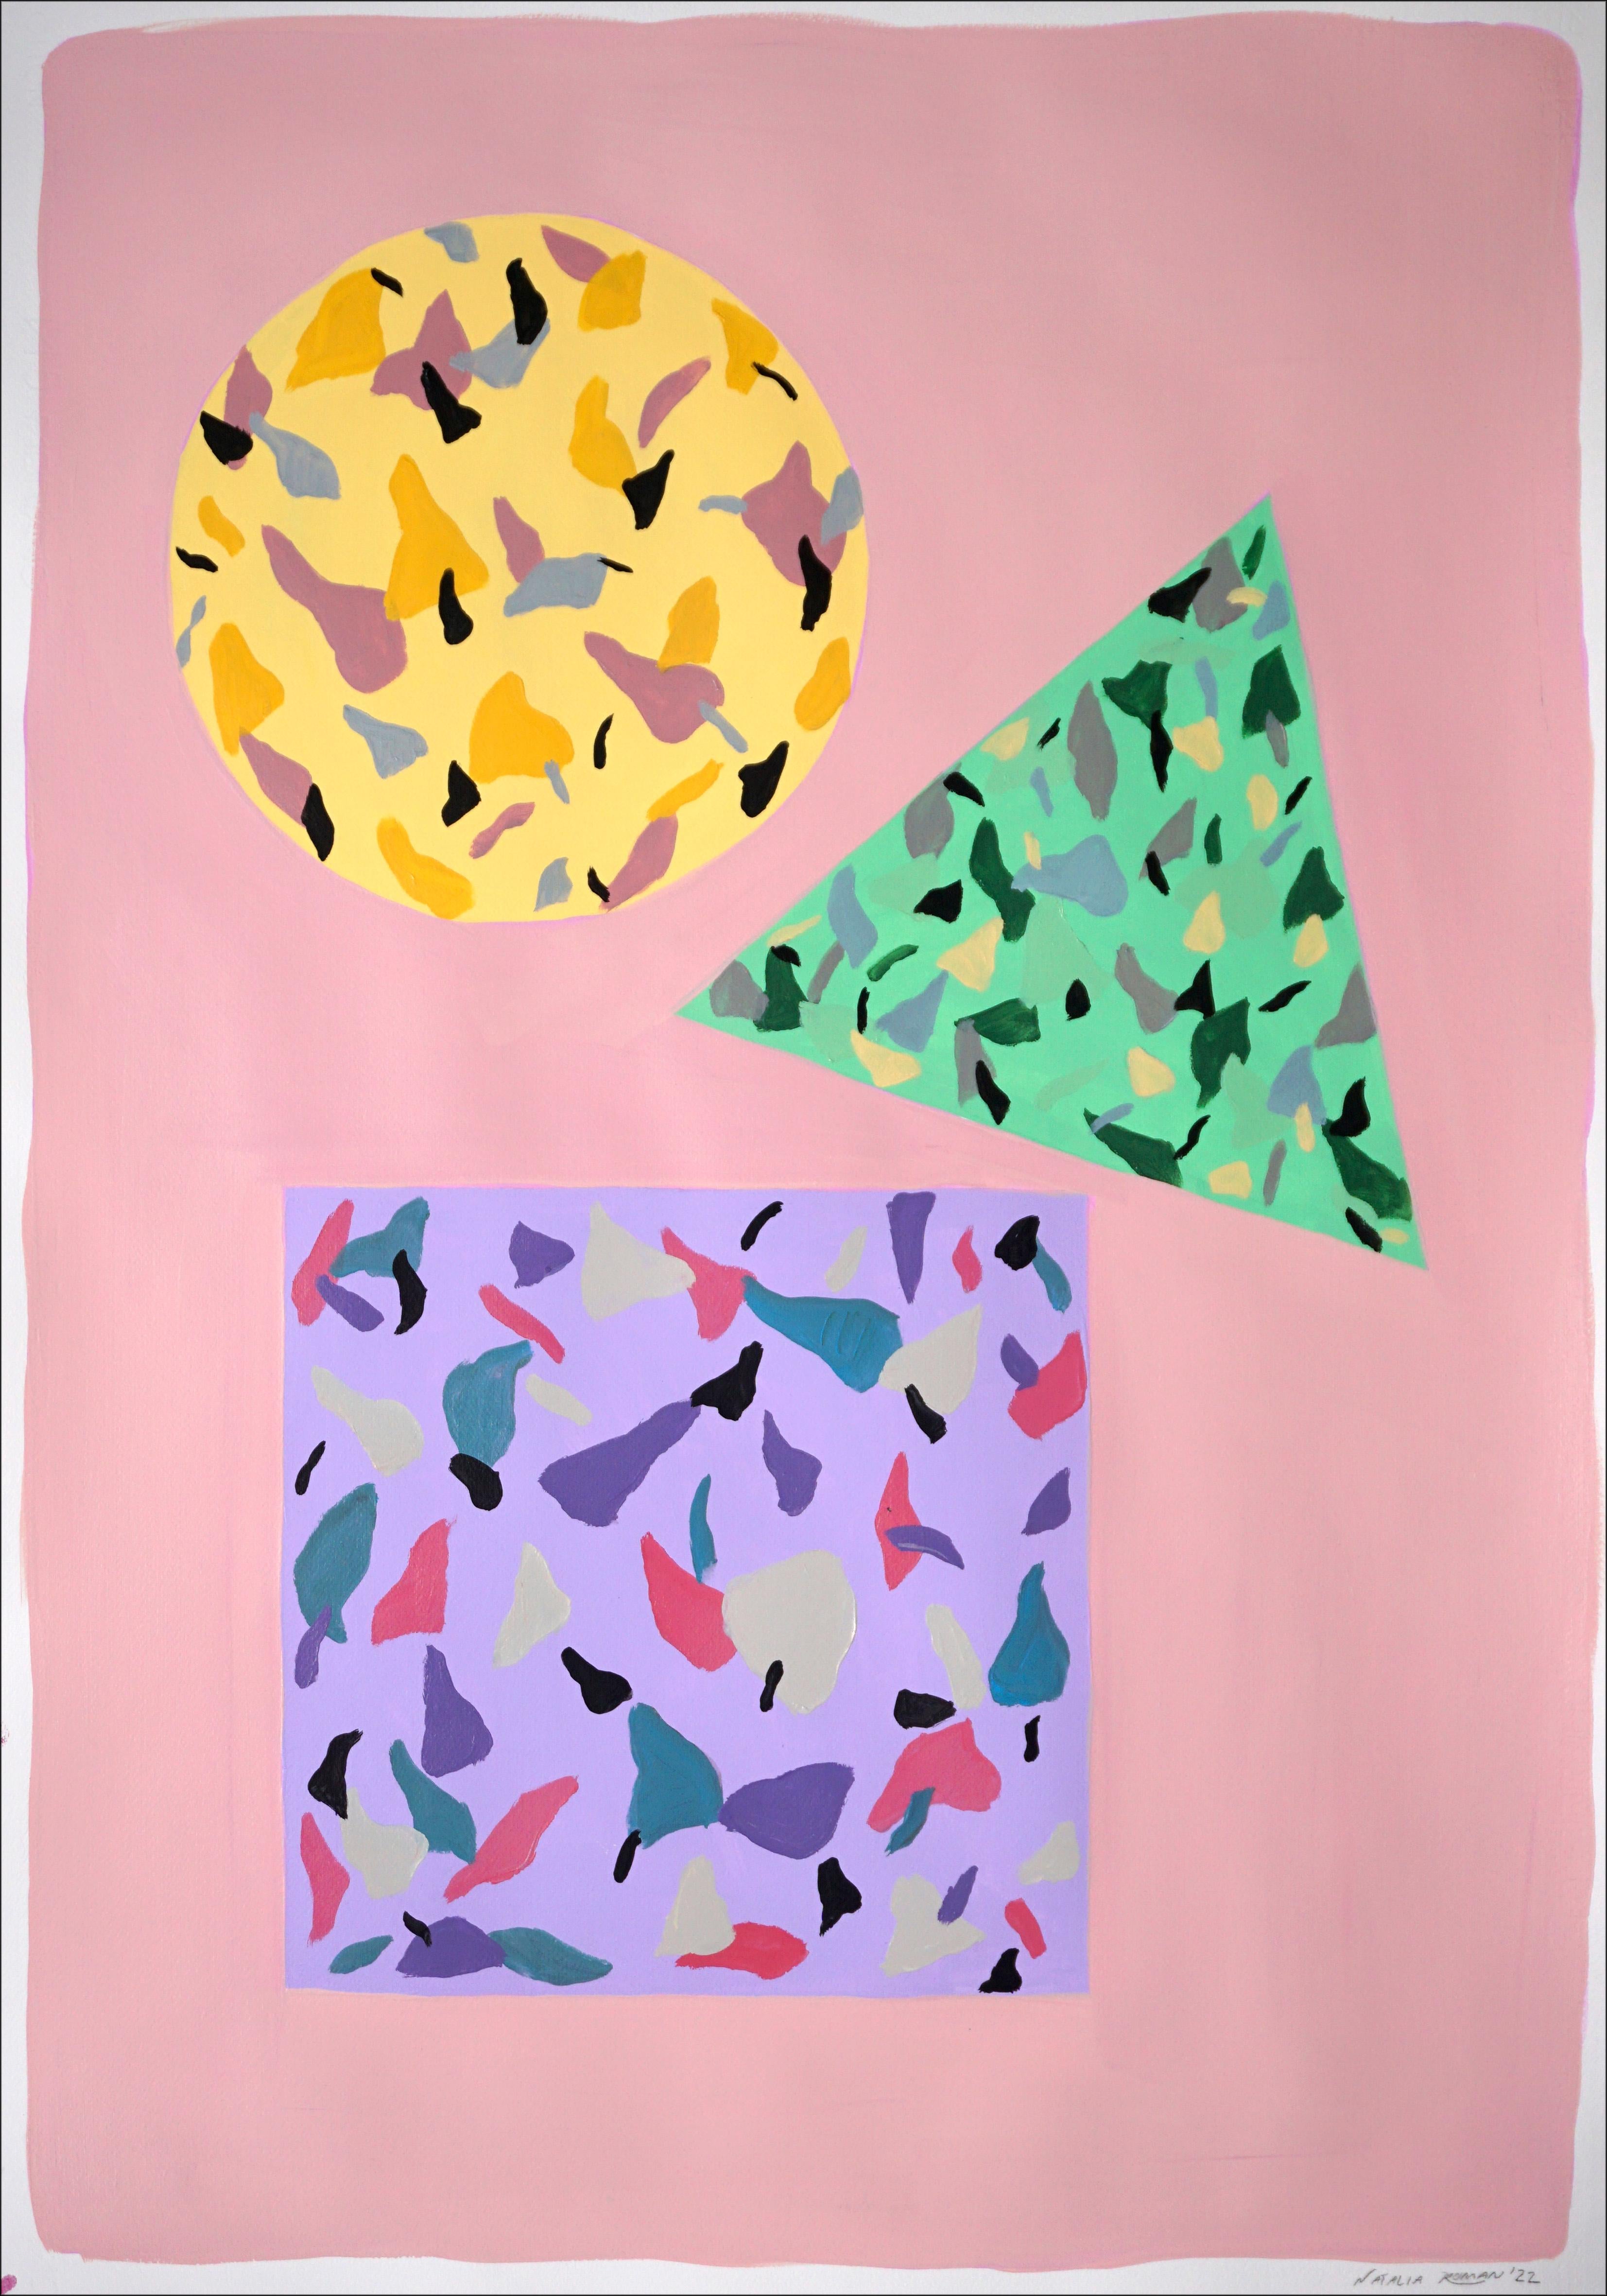 Still-Life Painting Natalia Roman - Tiles carrés, circulaires et triangulaires roses et jaunes, géométrie flottante sur papier